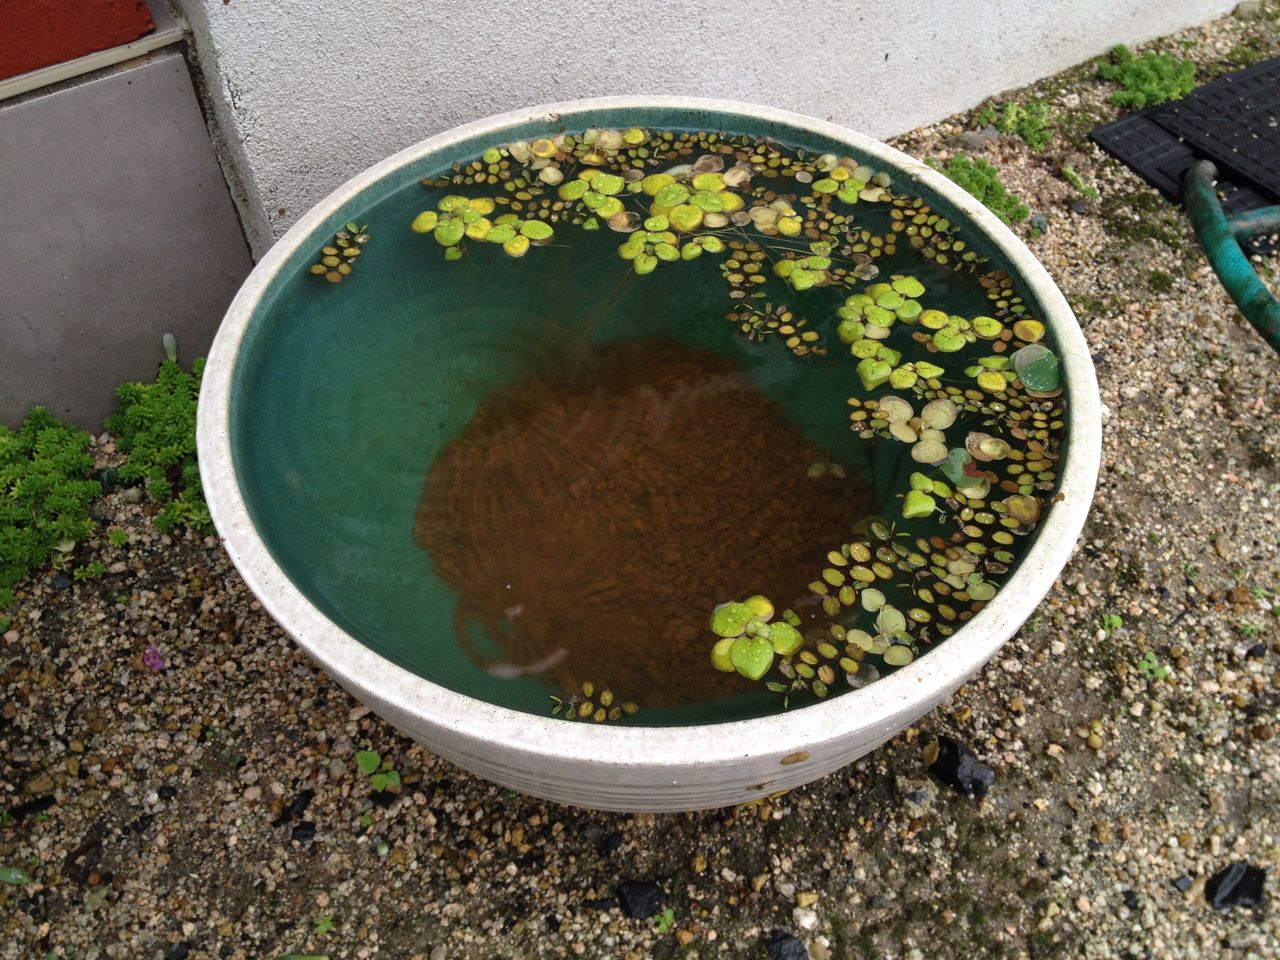 睡蓮鉢のメダカが全滅する 水槽にやったことを忘れないように書いておくブログ